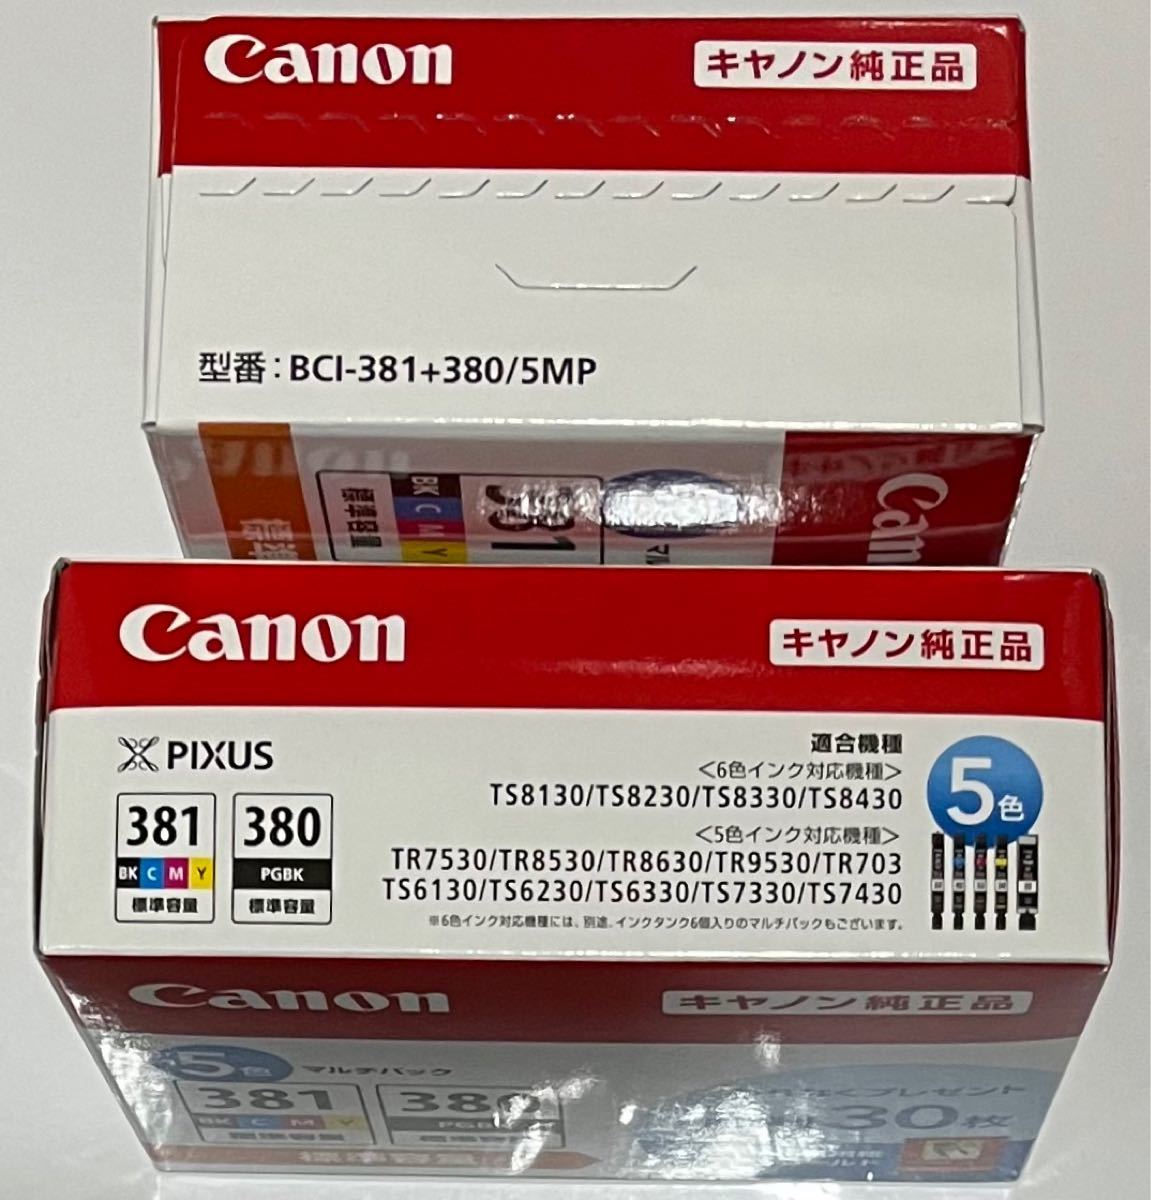 Canon 純正インクカートリッジ BCI-381+380/5MP 2個セット 送料無料